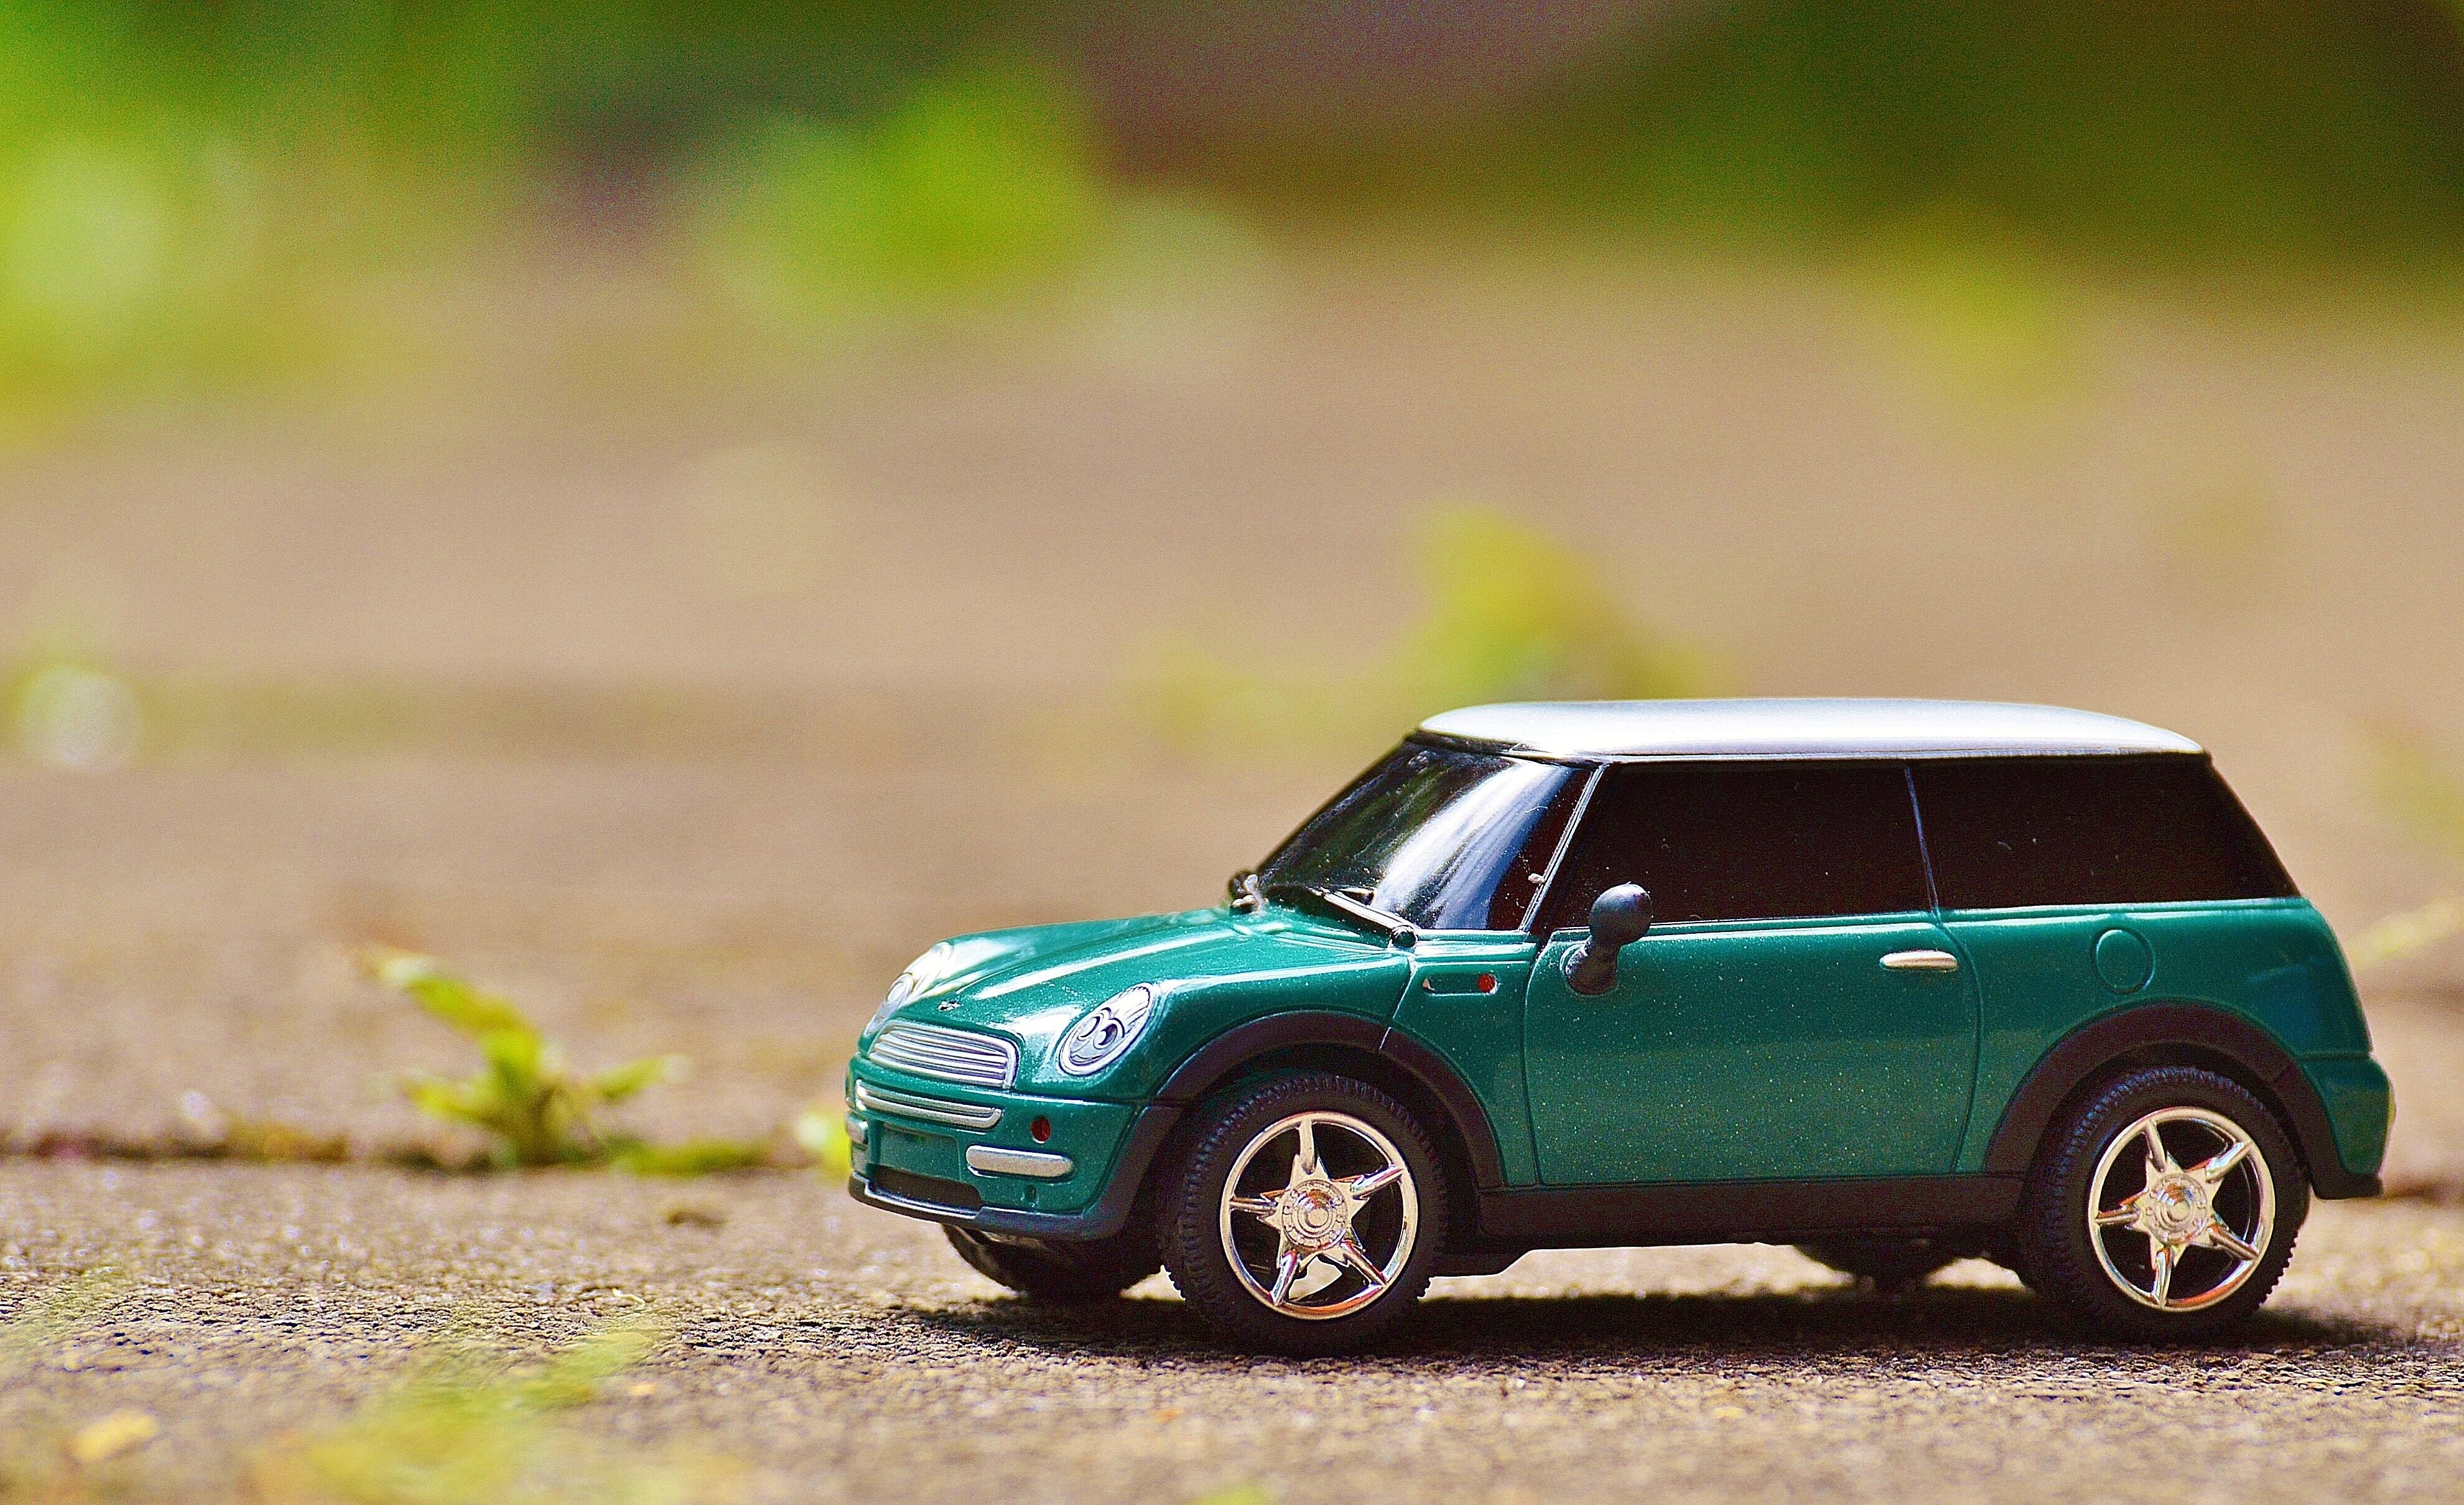 Картинка: Машинка, модель, Mini Cooper, асфальт, трава